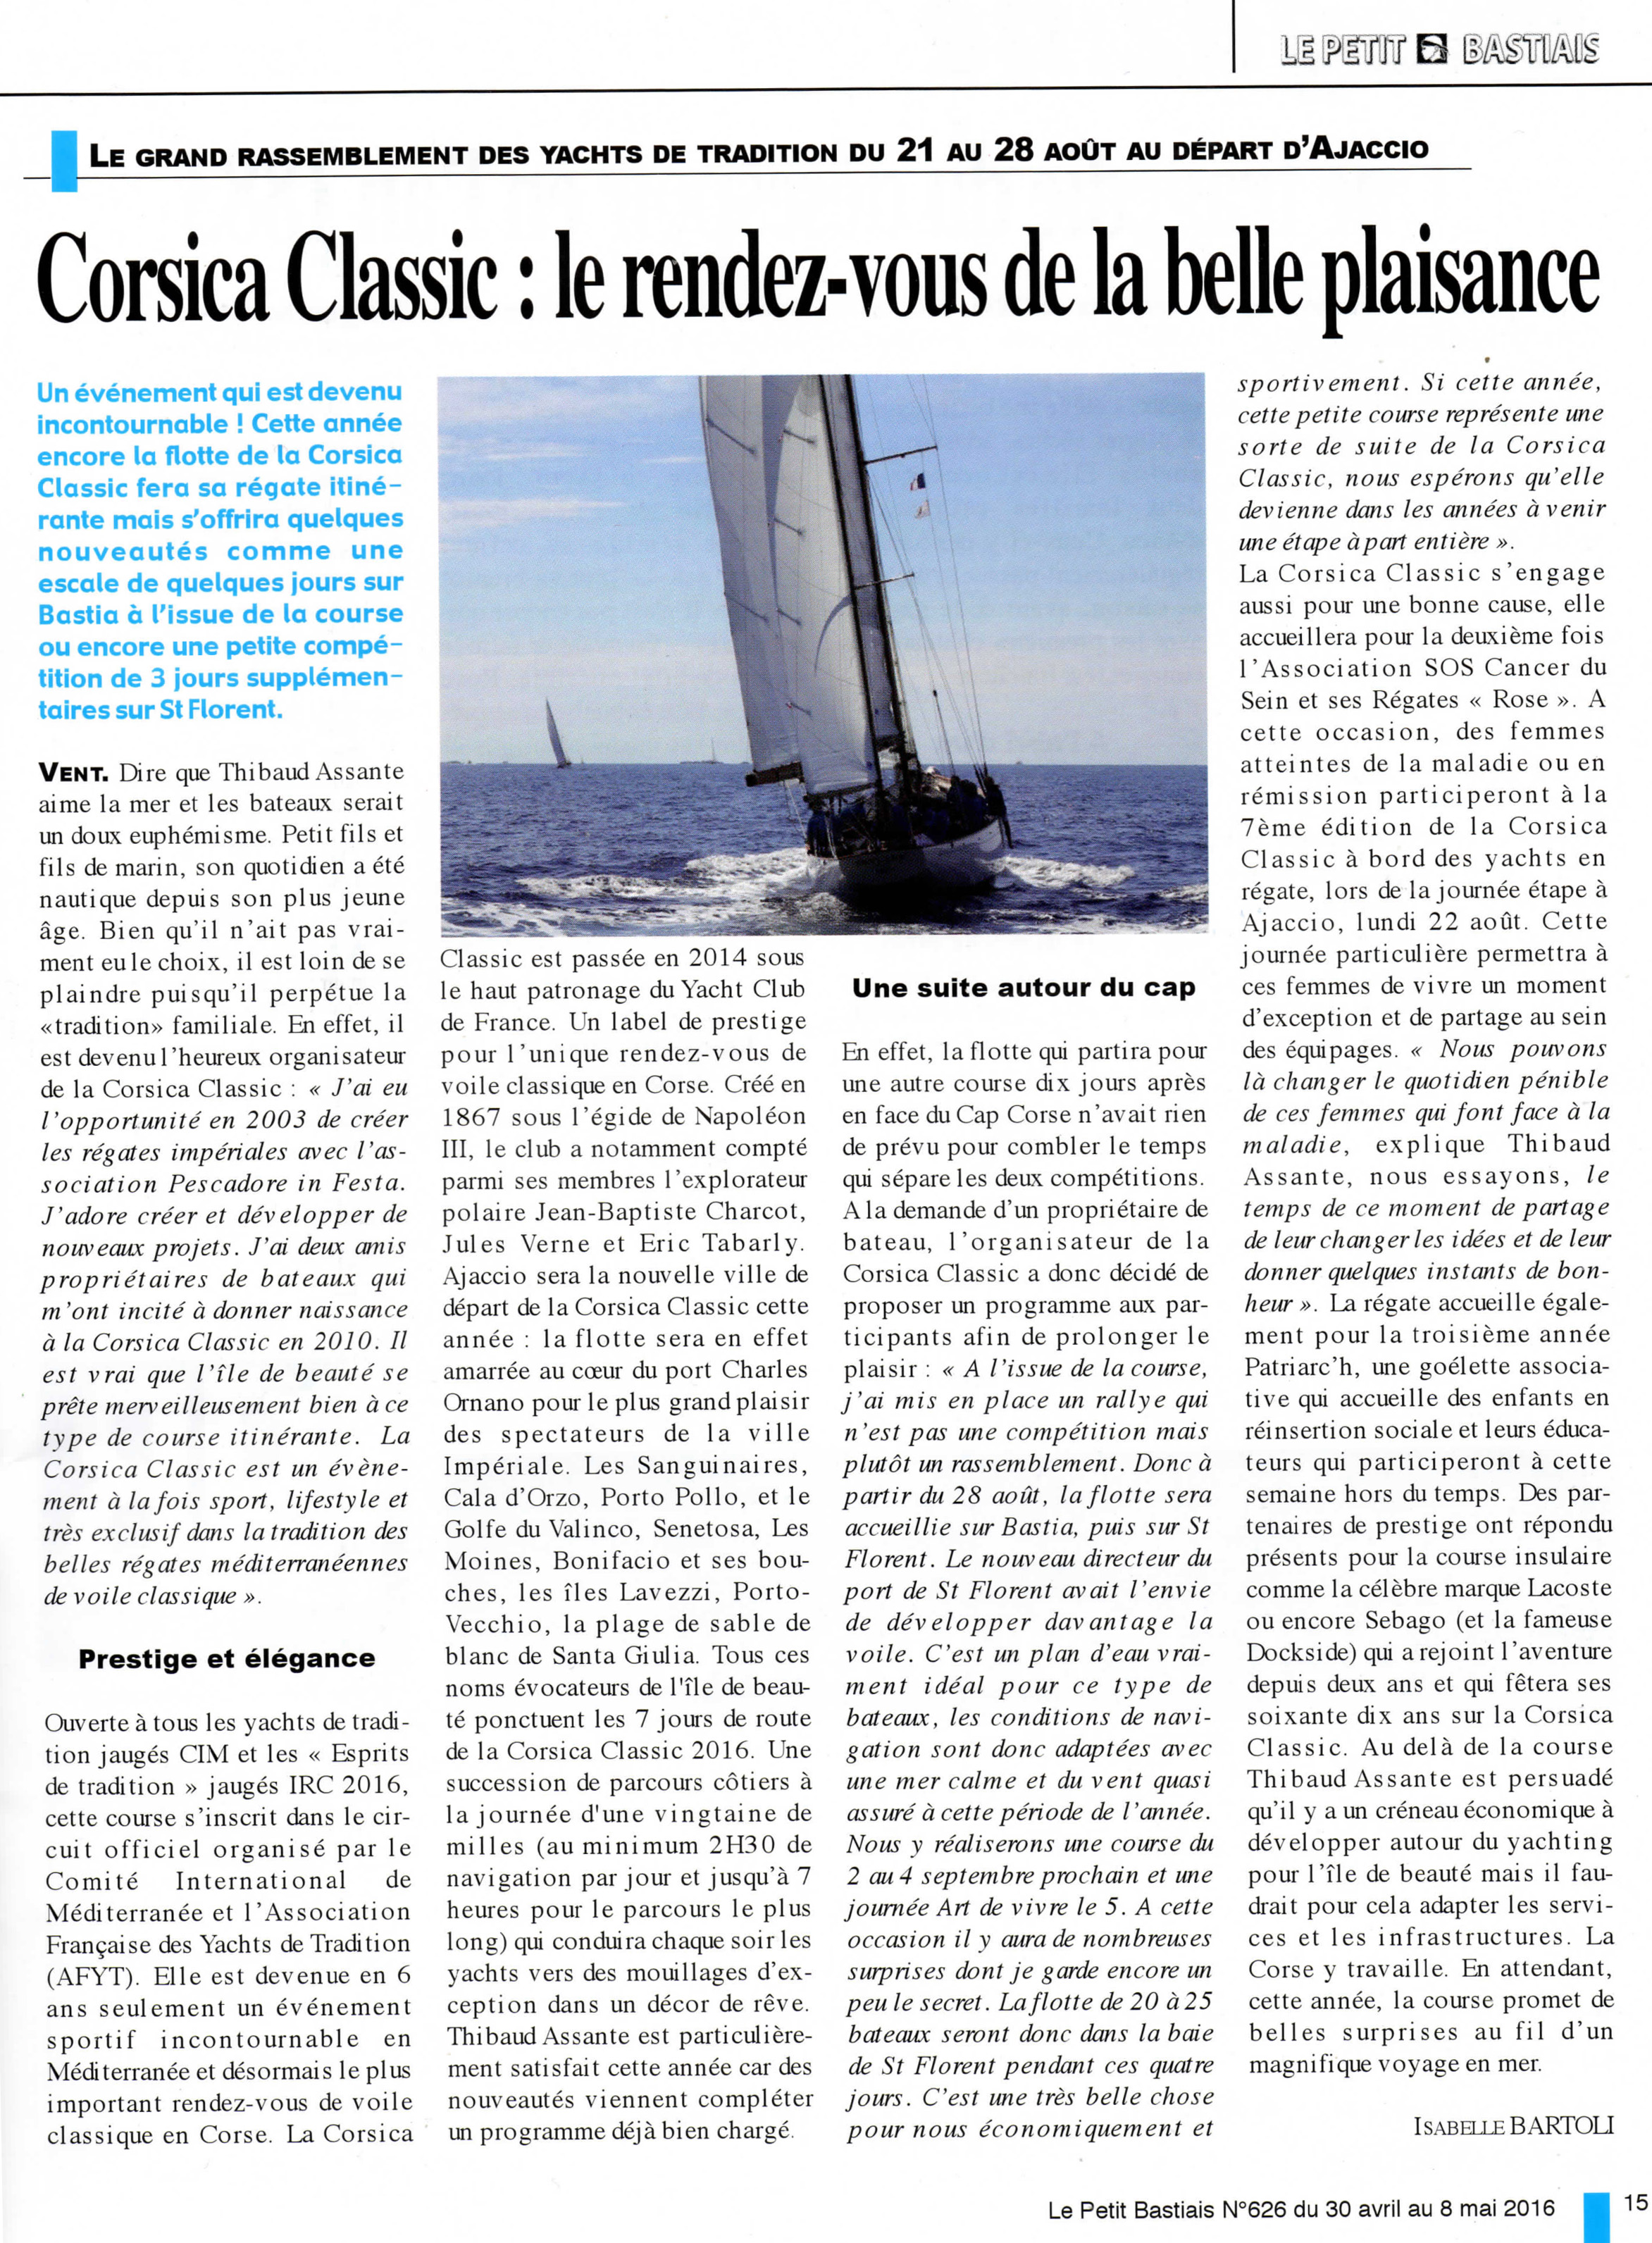 La revue de presse régionale / Corsican media Coverage 2016 